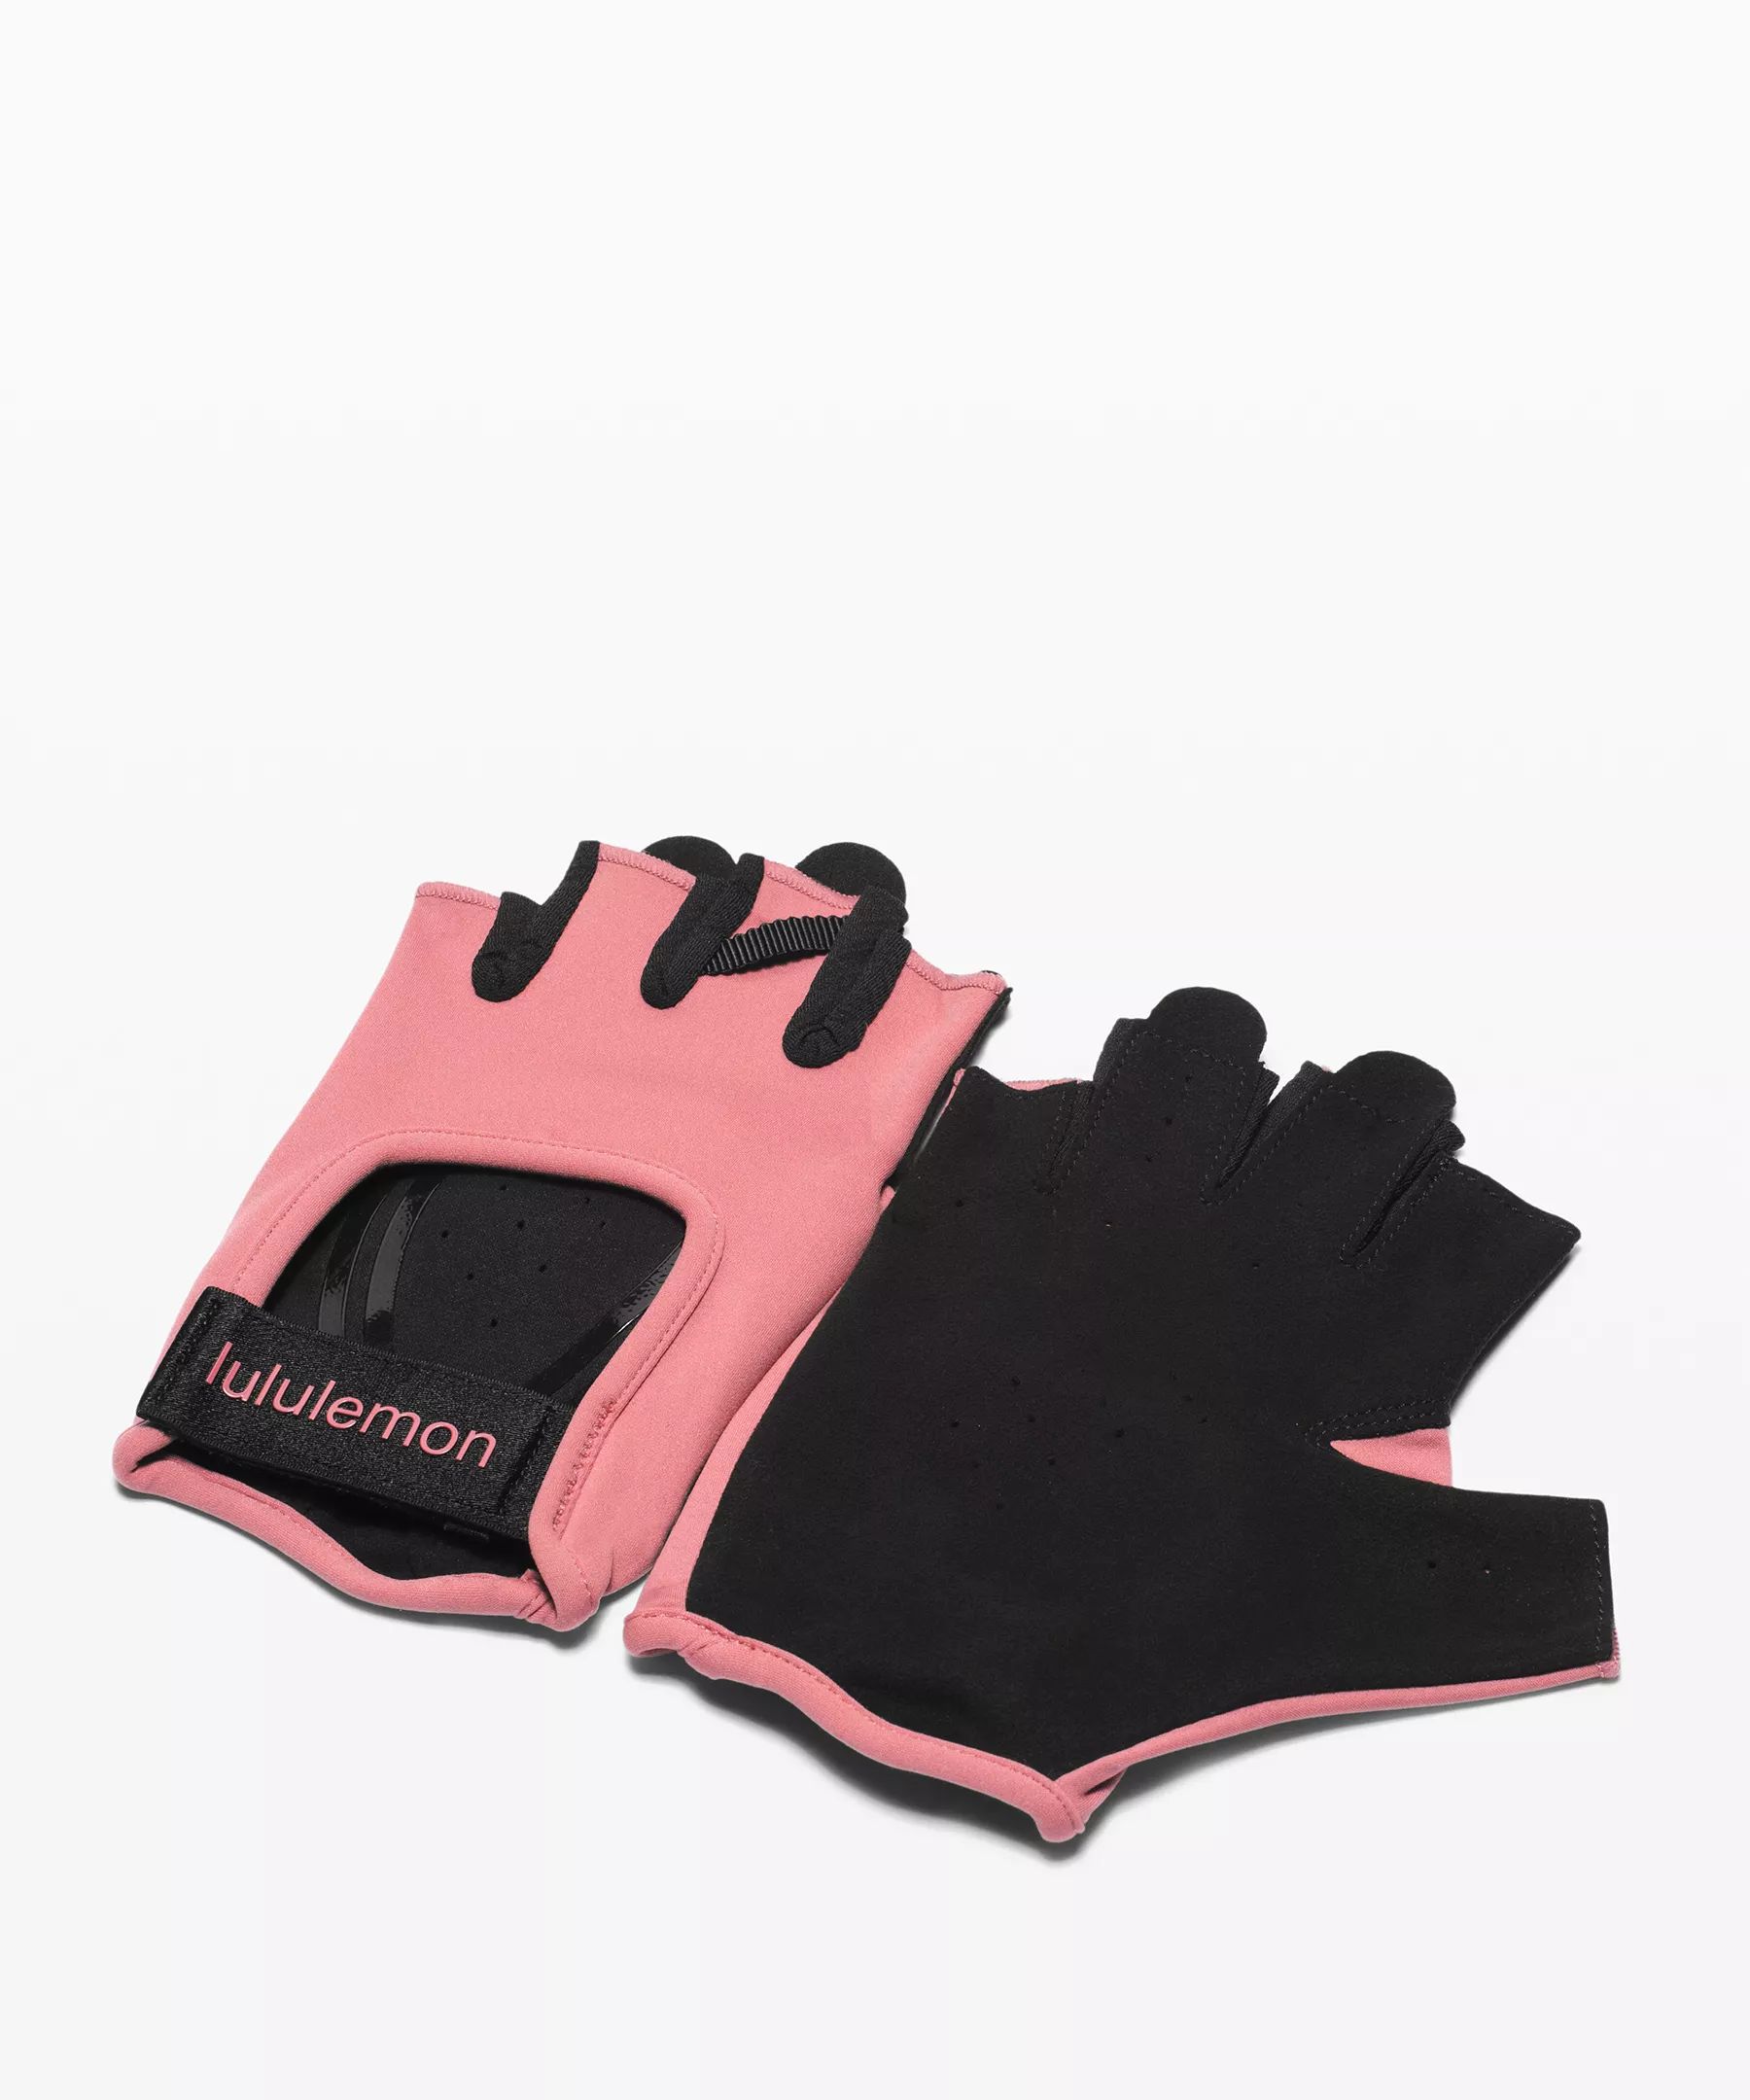 Uplift Training Gloves | Lululemon (US)